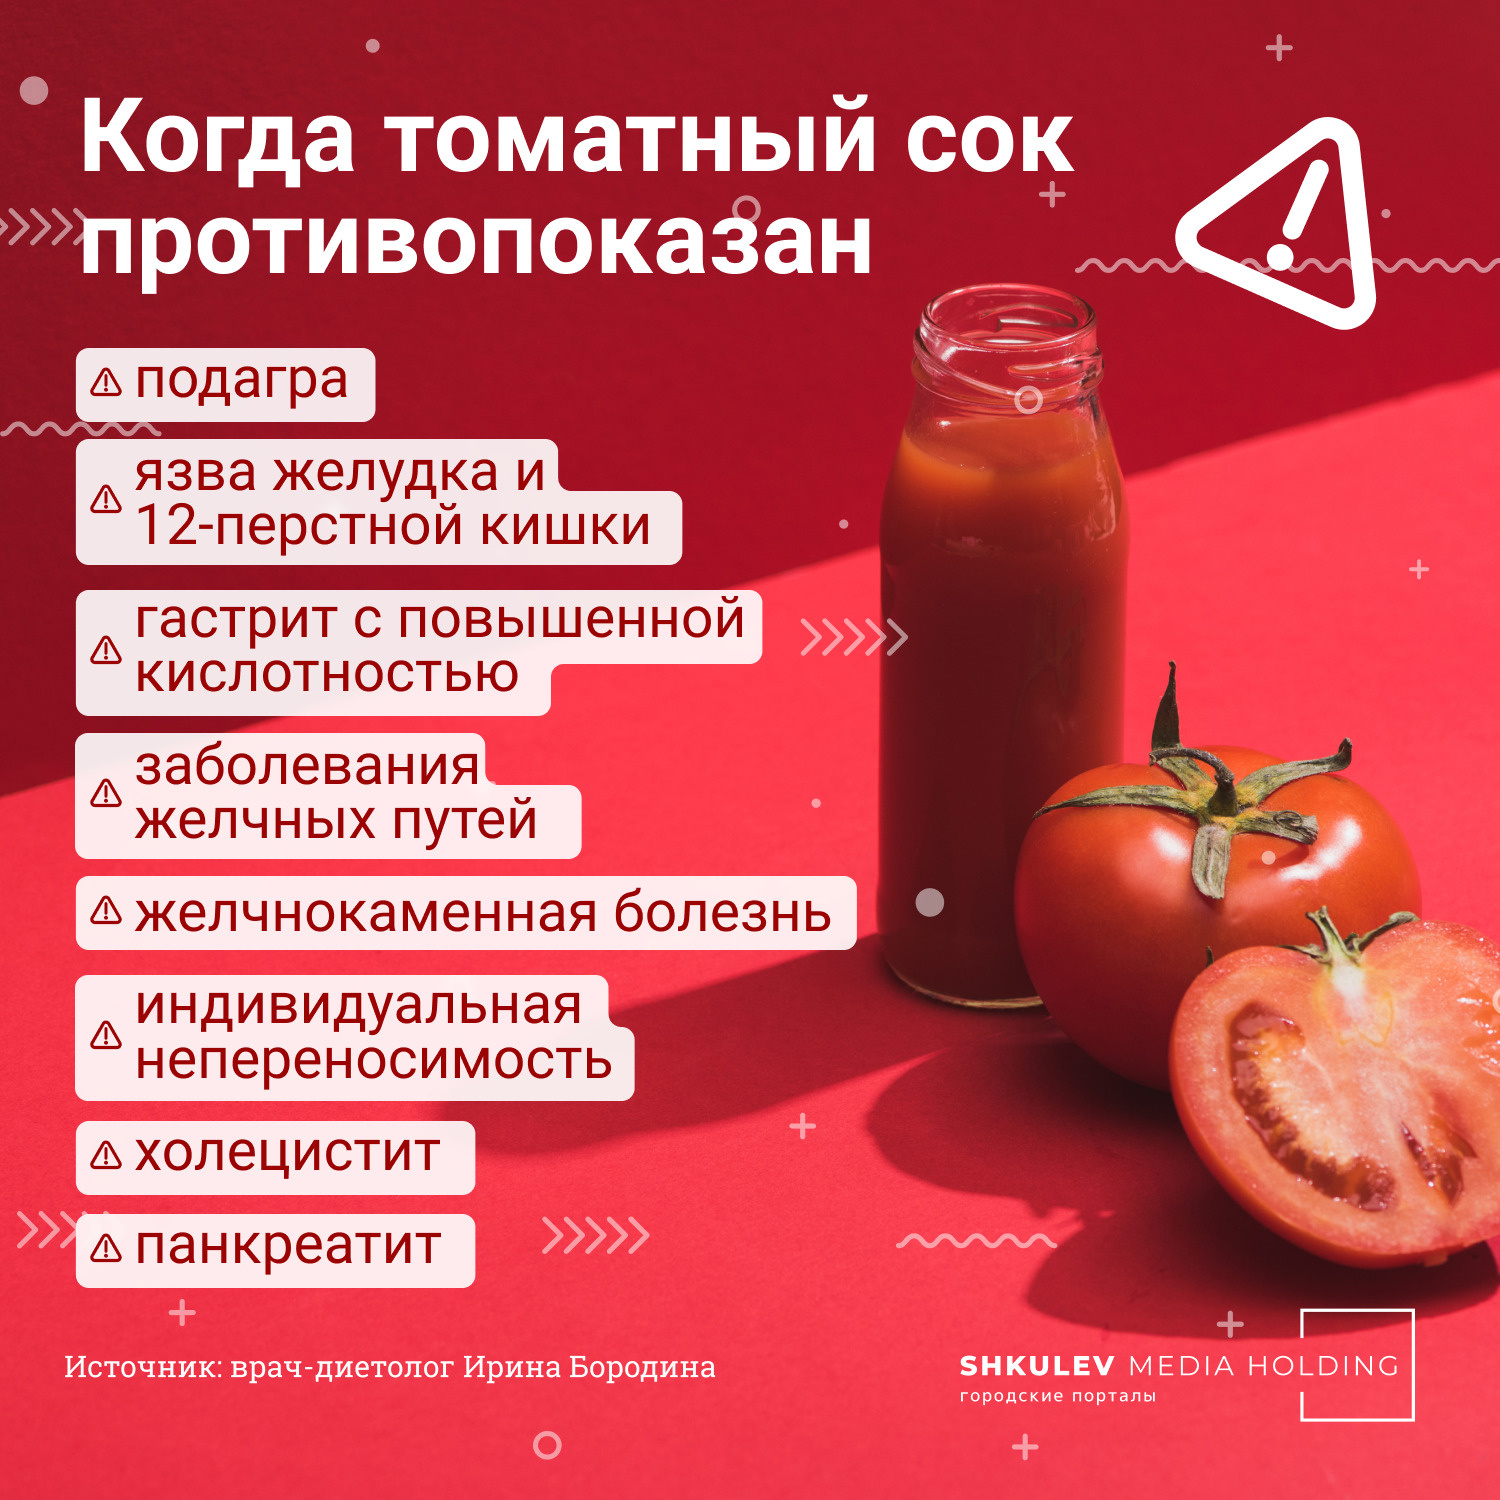 Если вы нашли свой диагноз в этом списке, томатный сок — не ваш выбор